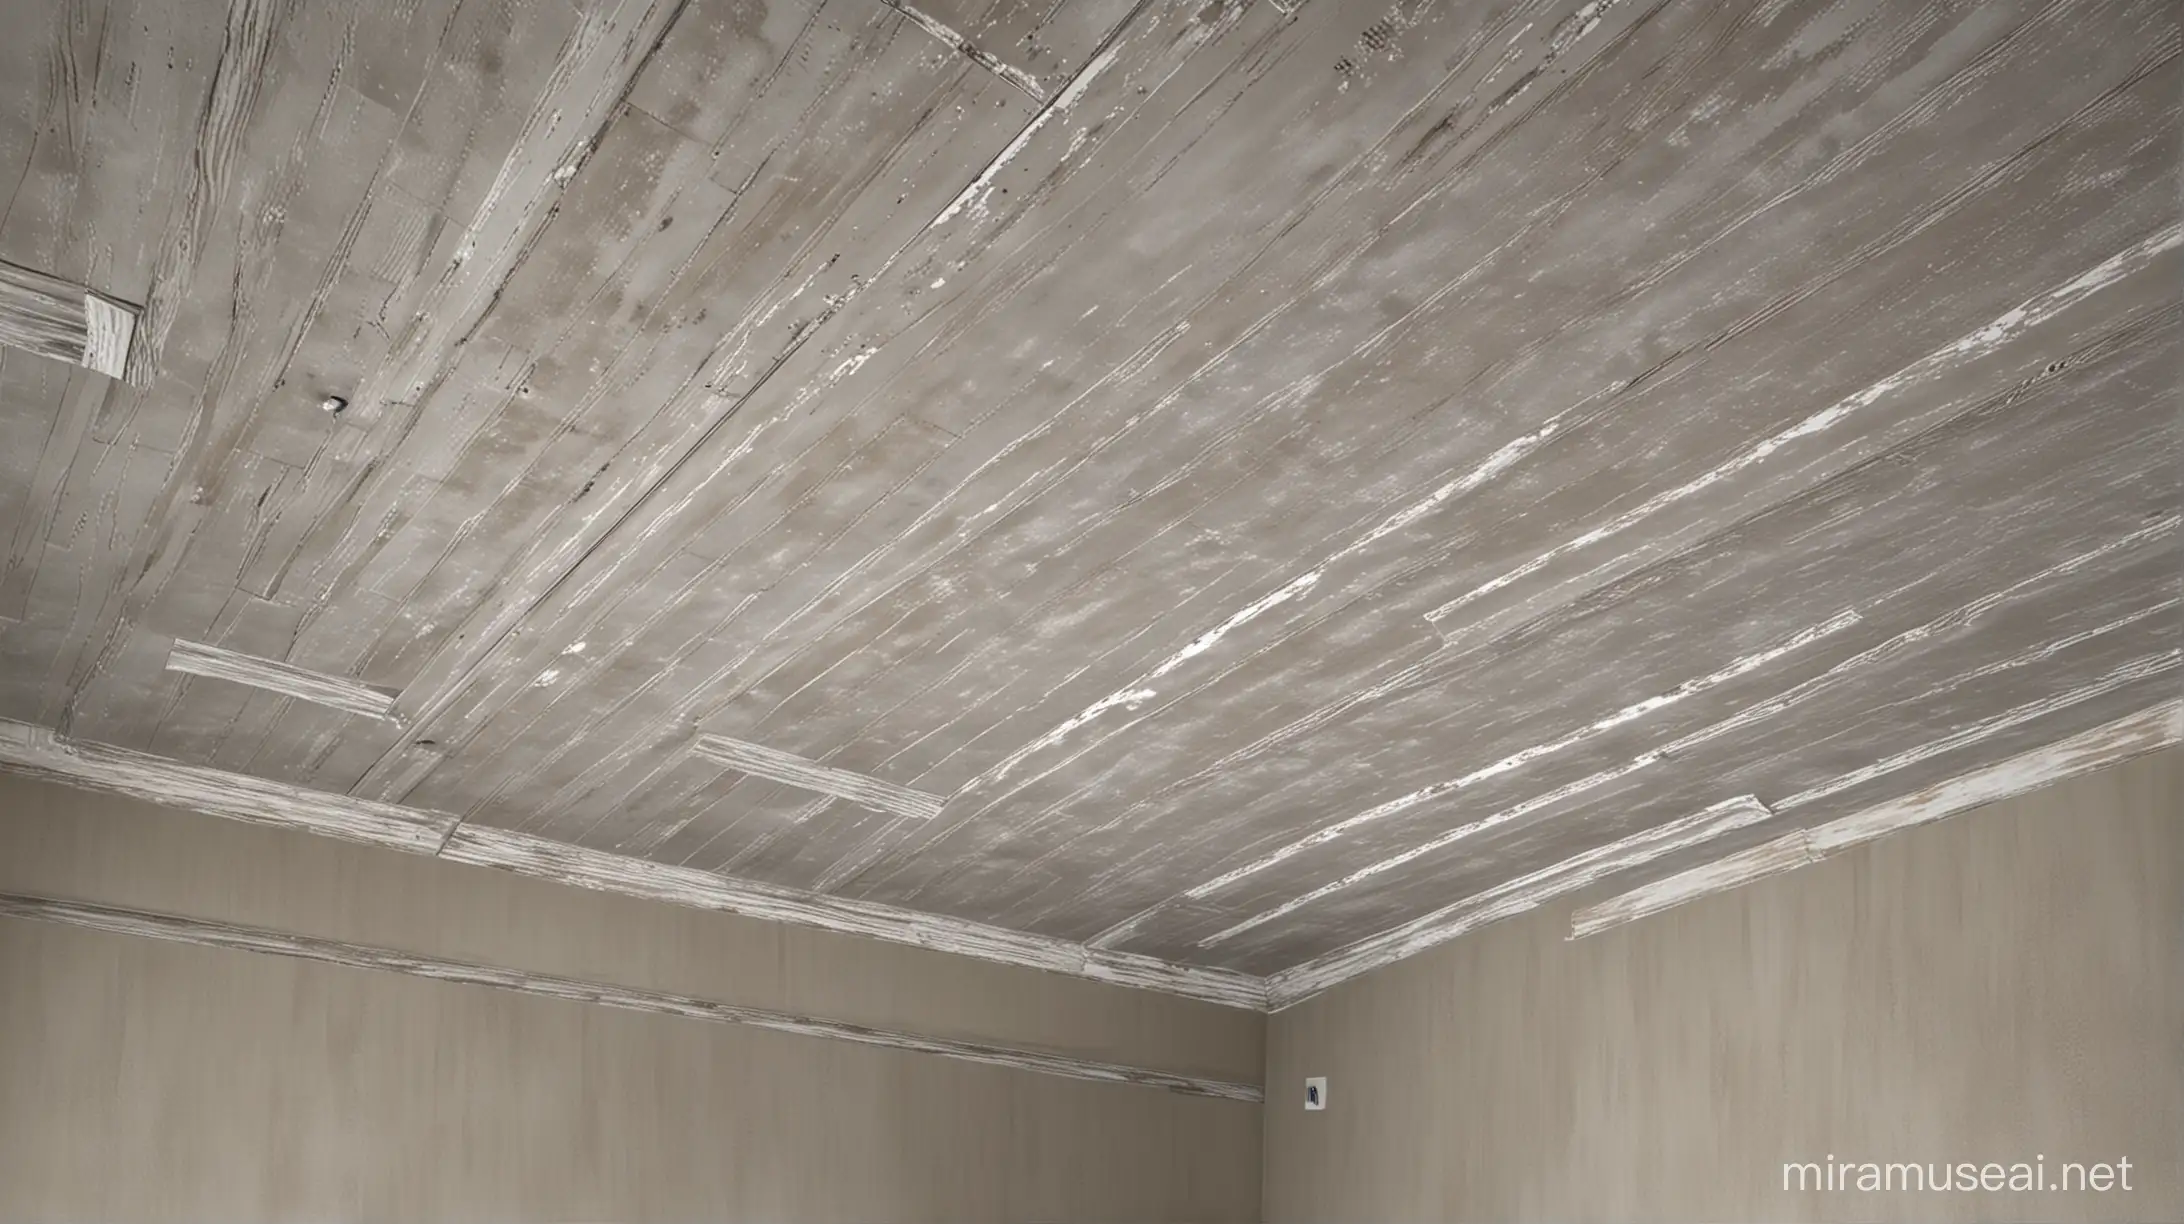 Génère une image 3D réaliste d'un plafond avec une résolution de 1920x1080 pixels. Assure-toi d'inclure les éléments suivants :  Disposition du plafond : Recrée un plafond typique avec des proportions réalistes, prenant en compte la hauteur, la forme et la texture du plafond. Assure-toi que le plafond est bien positionné dans l'espace de la pièce. Texture et matériaux : Choisis des textures appropriées pour représenter le matériau du plafond, telles que du plâtre, du bois, du métal ou du béton. Veille à ce que les détails des textures soient nets et réalistes, en tenant compte de l'aspect vieilli ou neuf du plafond. Éclairage et ombres : Utilise un éclairage réaliste pour illuminer le plafond et créer des ombres naturelles. Assure-toi que l'éclairage met en valeur la texture et les détails du plafond, tout en créant une ambiance réaliste dans la pièce. Détails du plafond : Ajoute des détails réalistes tels que des luminaires, des corniches, des poutres ou d'autres éléments décoratifs présents sur le plafond. Veille à ce que ces éléments contribuent à l'authenticité de la scène. Perspective et composition : Choisis une perspective qui met en valeur le plafond de manière équilibrée et attrayante. Veille à ce que la composition de l'image soit bien équilibrée, en mettant en valeur les détails et la texture du plafond. Assure-toi que l'image générée représente de manière réaliste un plafond, en capturant les détails de la texture, de l'éclairage et de la composition. La résolution de l'image doit être de 1920x1080 pixels.